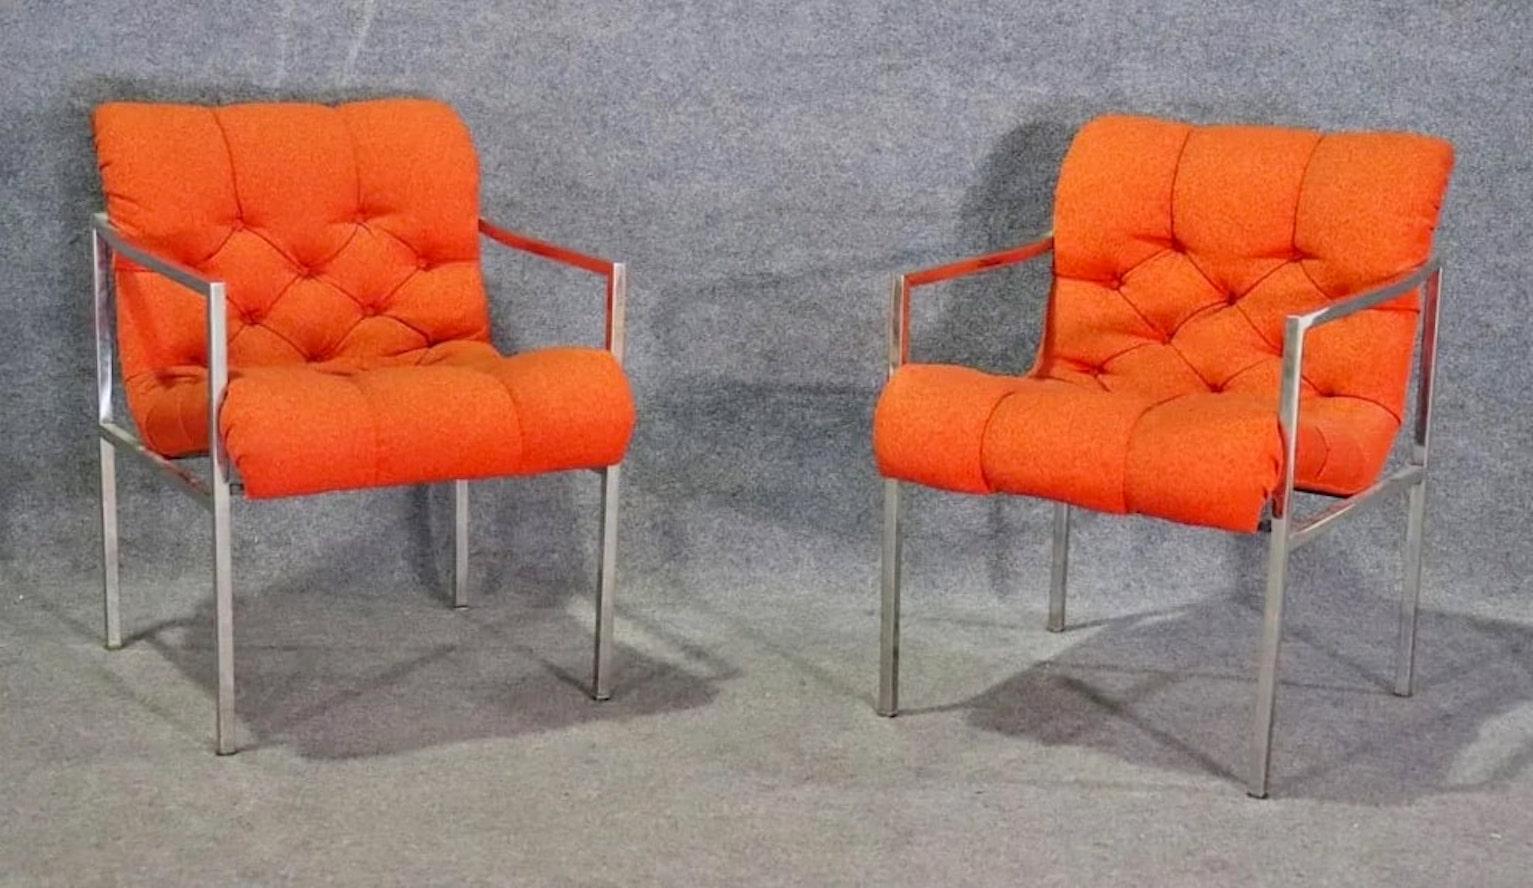 Paire de fauteuils modernes vintage avec structure en chrome poli supportant un siège scoop flottant. Assise en tissu touffeté avec une grande forme incurvée.
Veuillez confirmer le lieu NY ou NJ